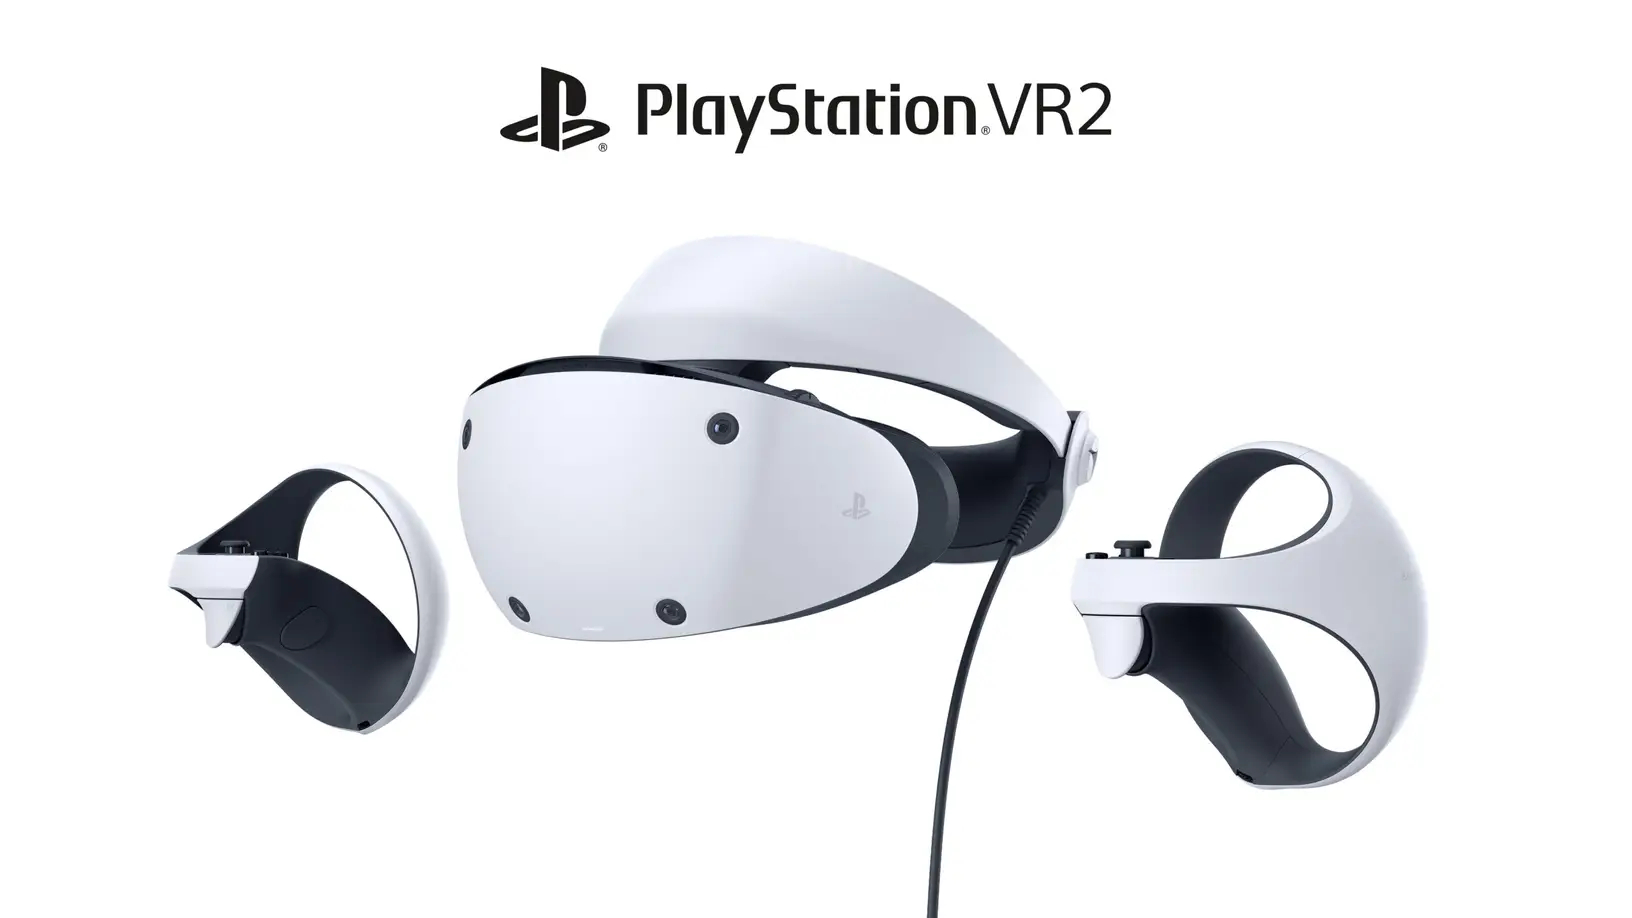 Immagine pubblicata in relazione al seguente contenuto: Sony Interactive Entertainment lancia l'headset VR next gen PlayStation VR2 | Nome immagine: news34212_Sony-PlayStation-VR2_1.jpg